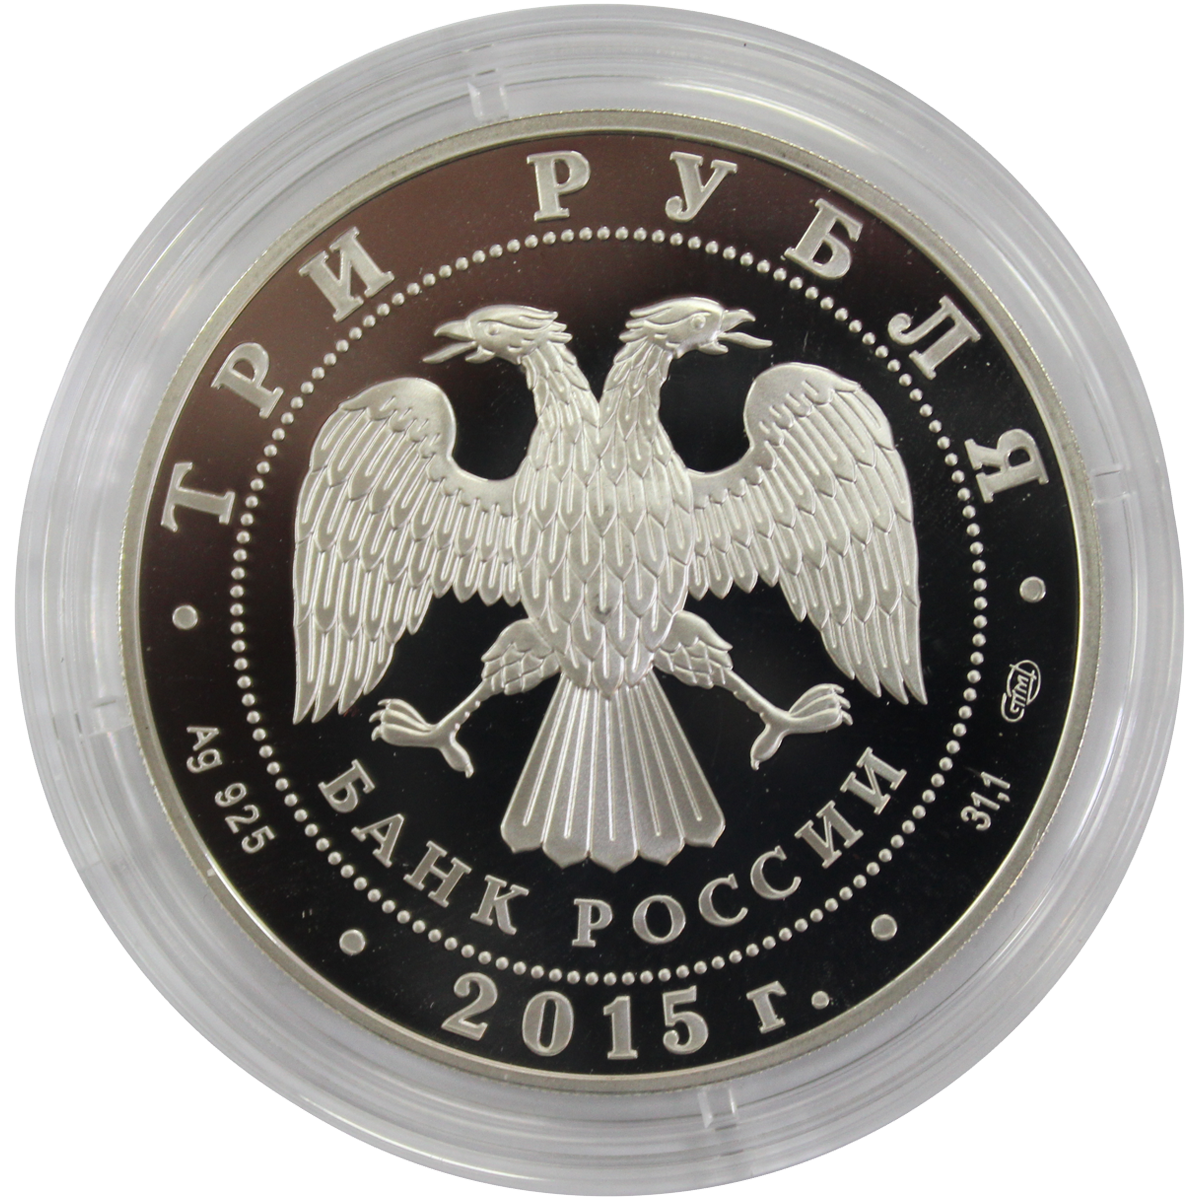 3 рубля серебро россия